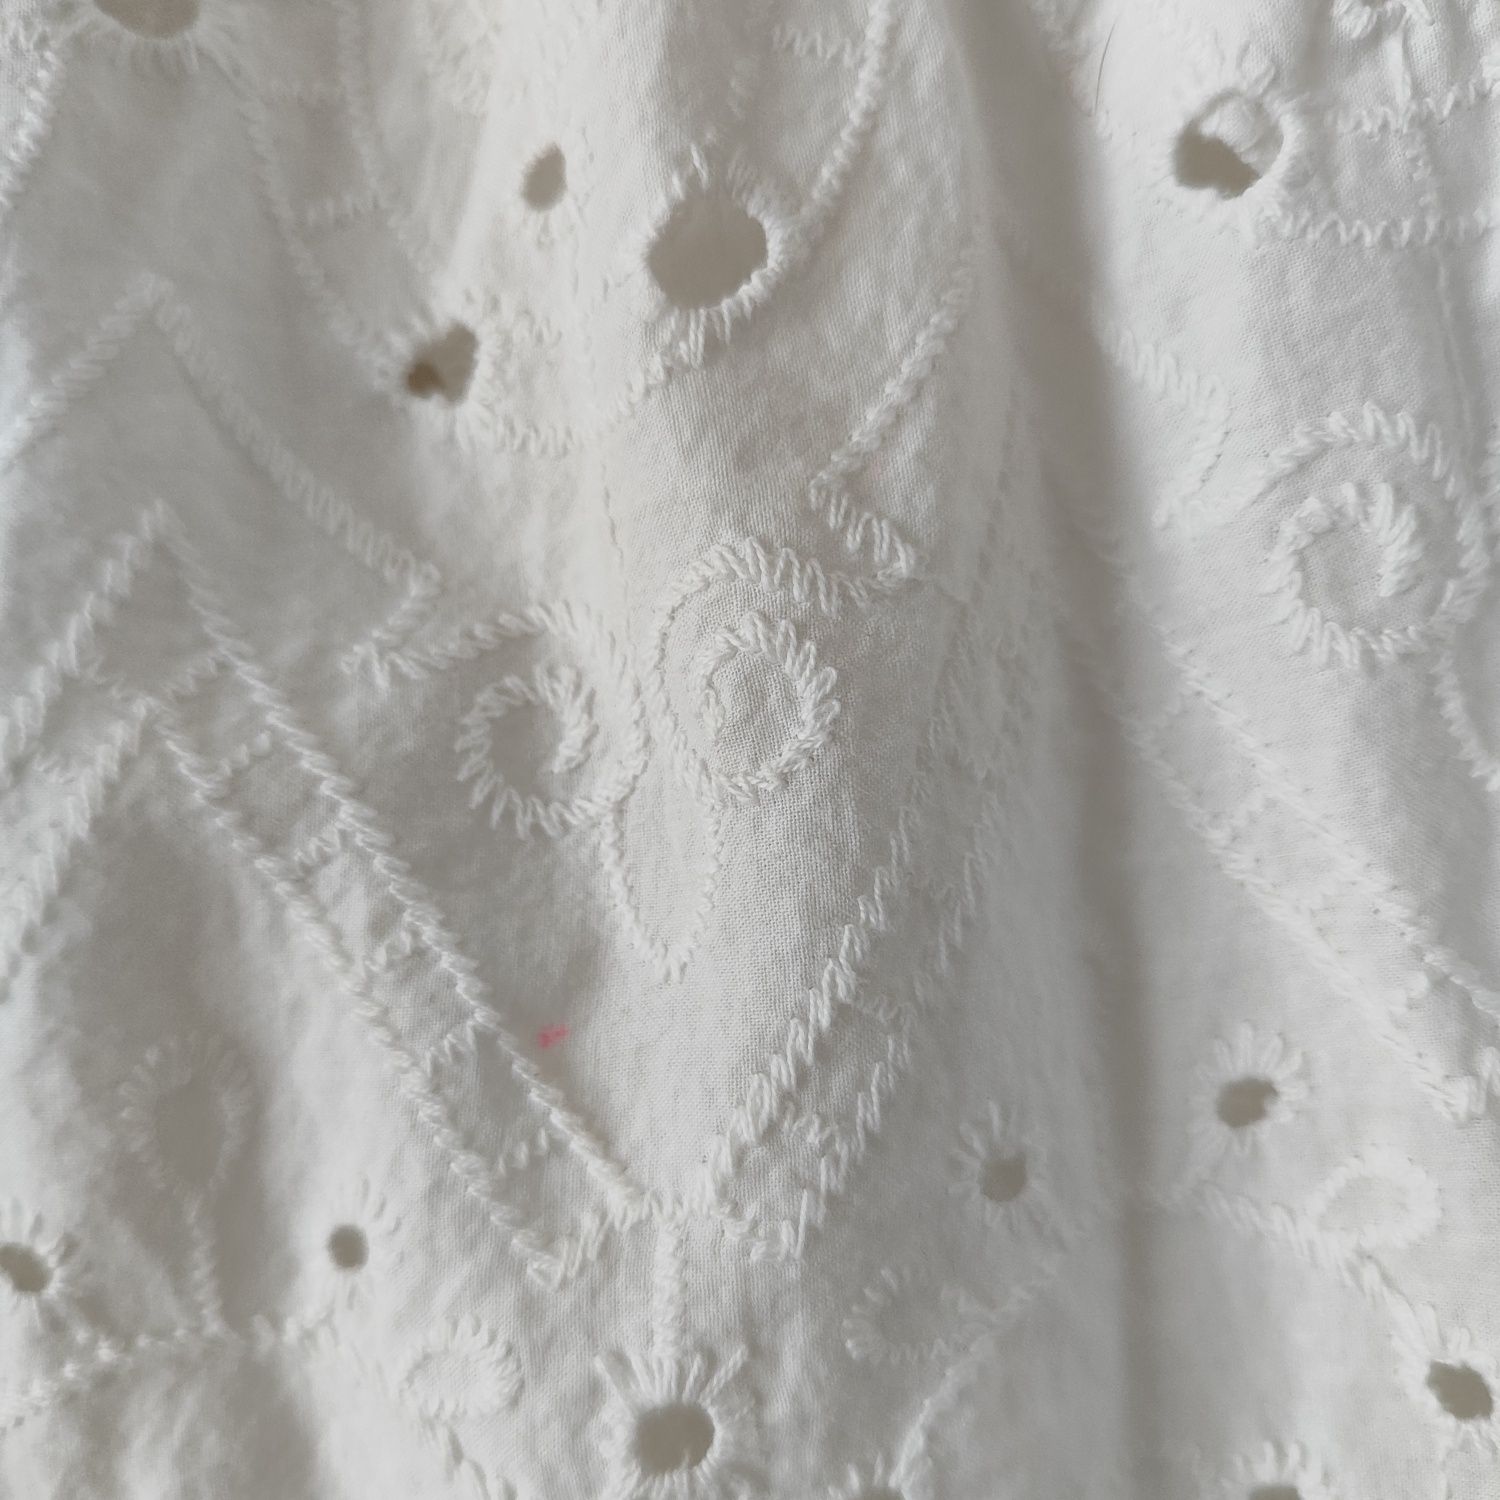 Biała bluzka ażurowa damska z baskinka rozmiar M